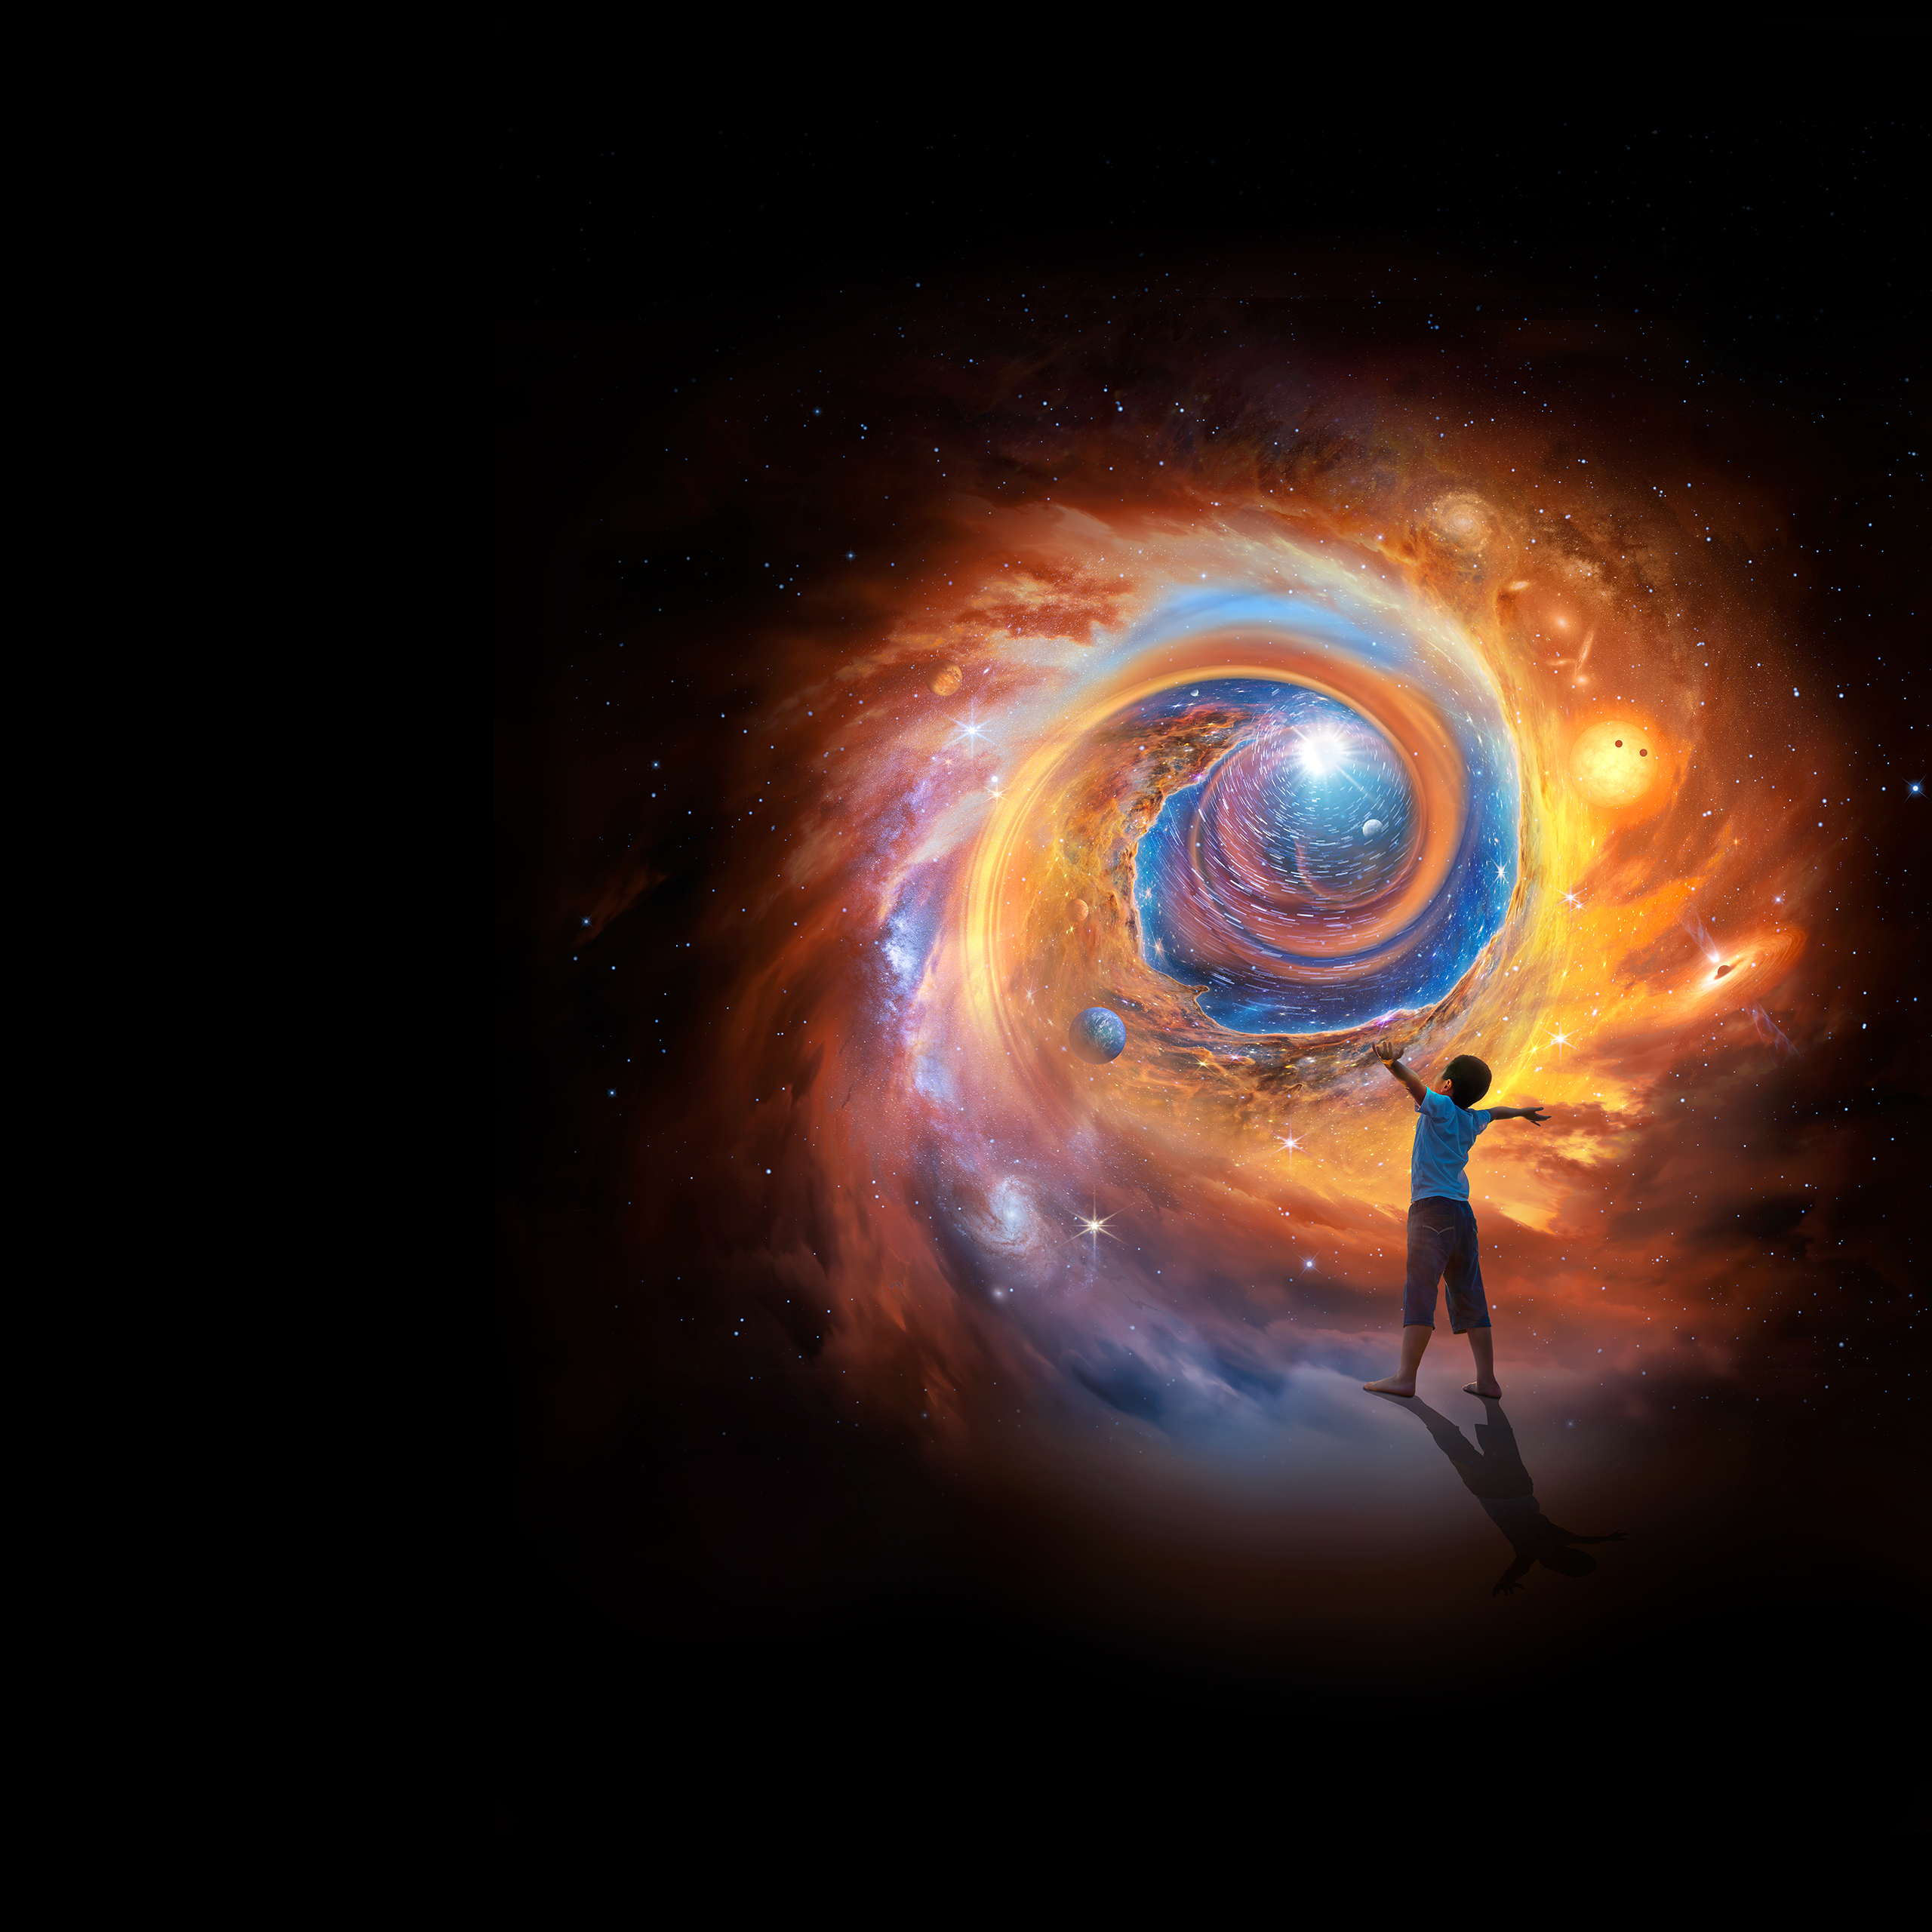 Imagen artística en la que aparece un niño de espaldas, con los brazos extendidos hacia arriba, y de frene a una imagen del universo en la que se ven planetas, galaxias, estrellas y polvo.